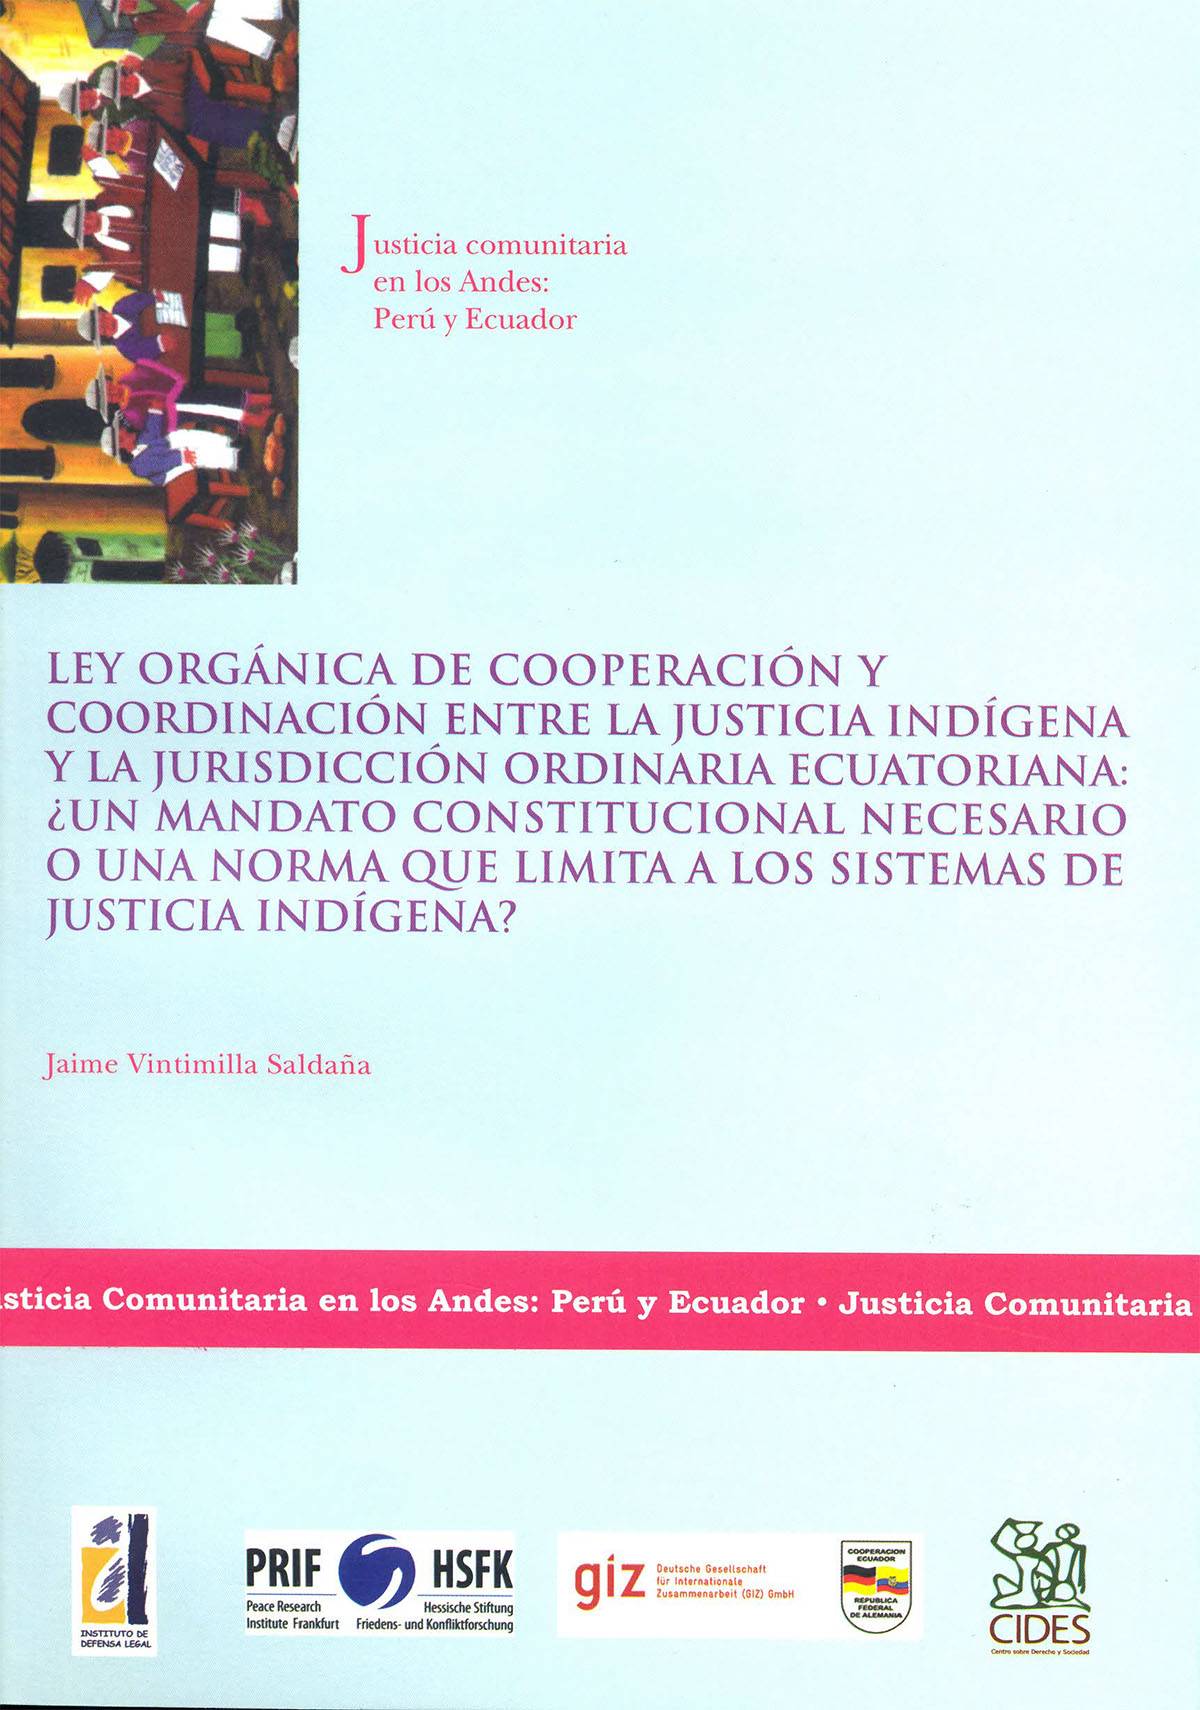 Ley Orgánica de Cooperación y Coordinación entre Justicia Indígena y la Jurisdicción Ordinaria Ecuatoriana: ¿Un mandato constitucional necesario o una norma que limita a los sistemas de justicia indígena?